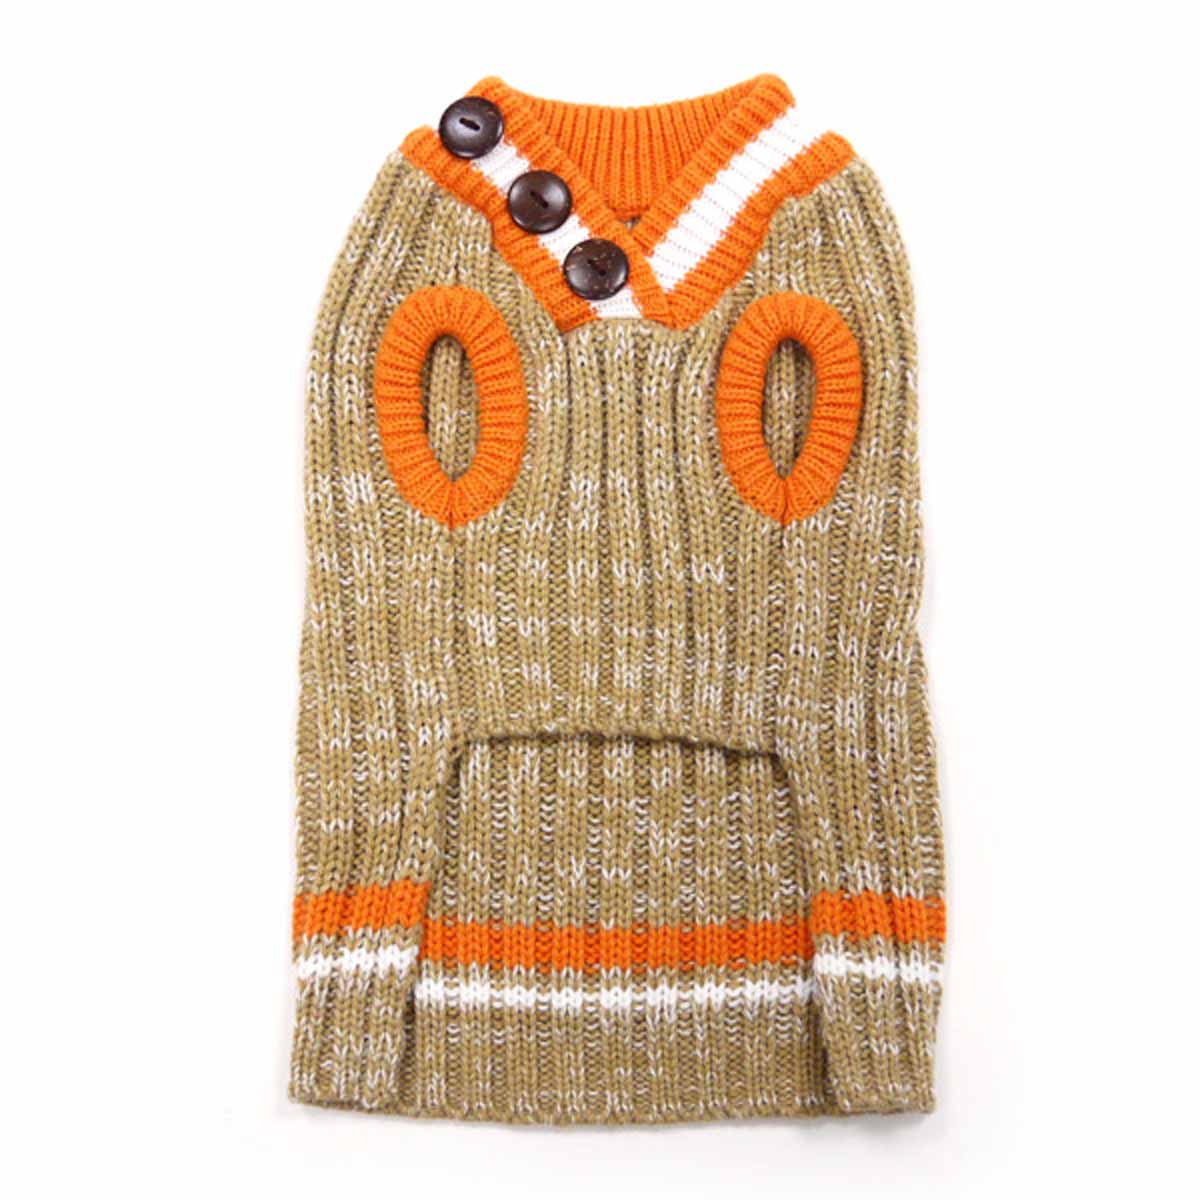 City V-Neck Dog Sweater by Dogo - Beige with Orange Trim